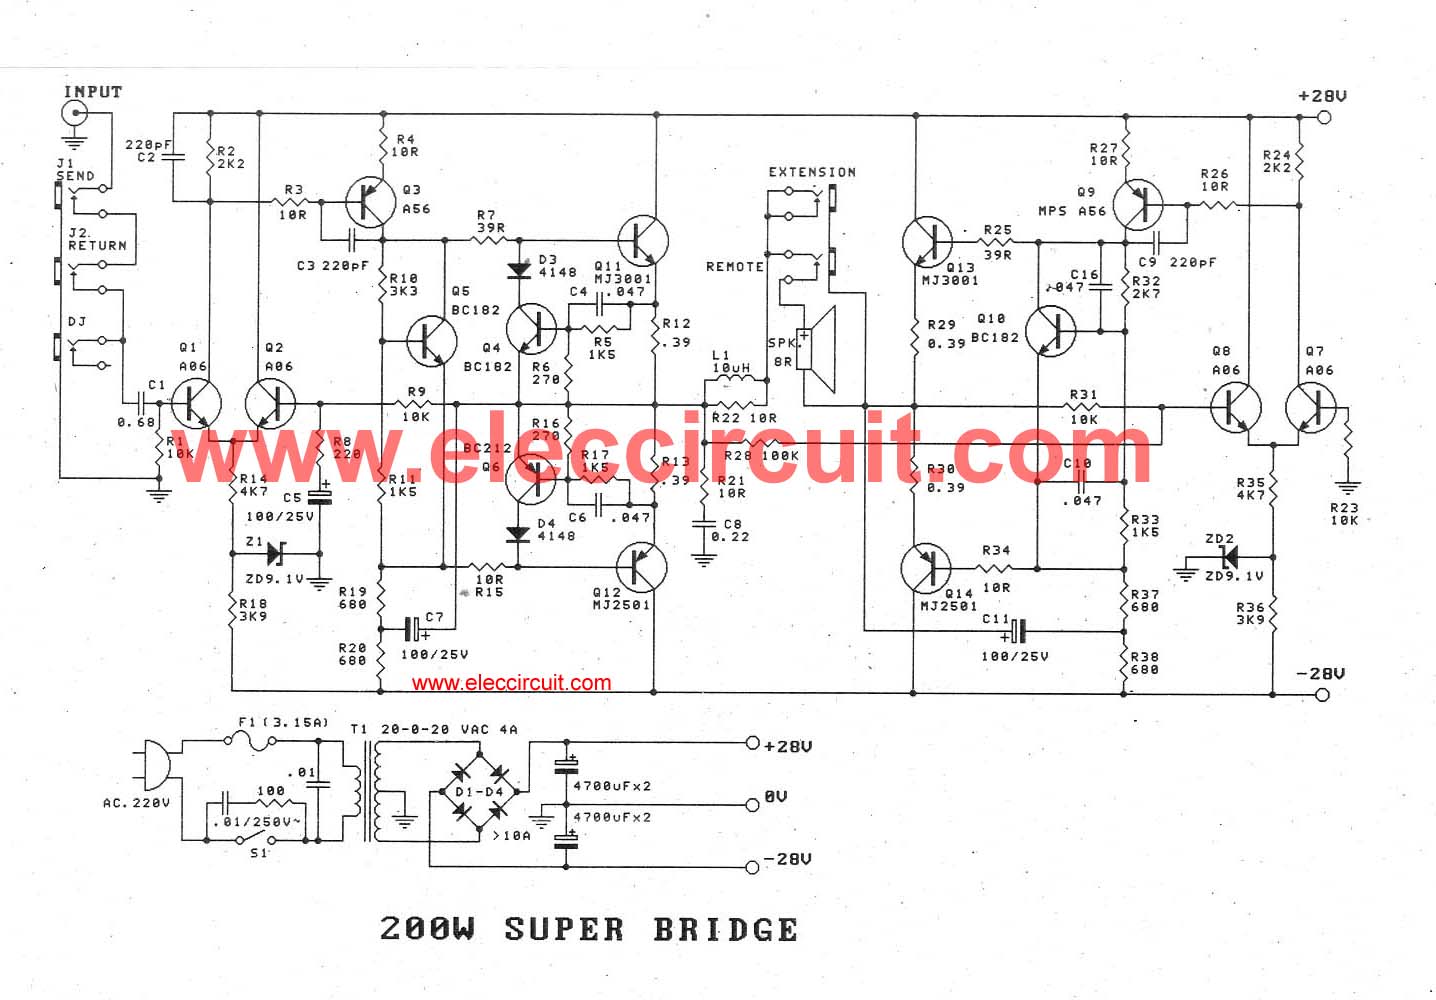 120w Amplifier Circuit - 140 Watt Igb Power Amplifier Circuit - 120w Amplifier Circuit